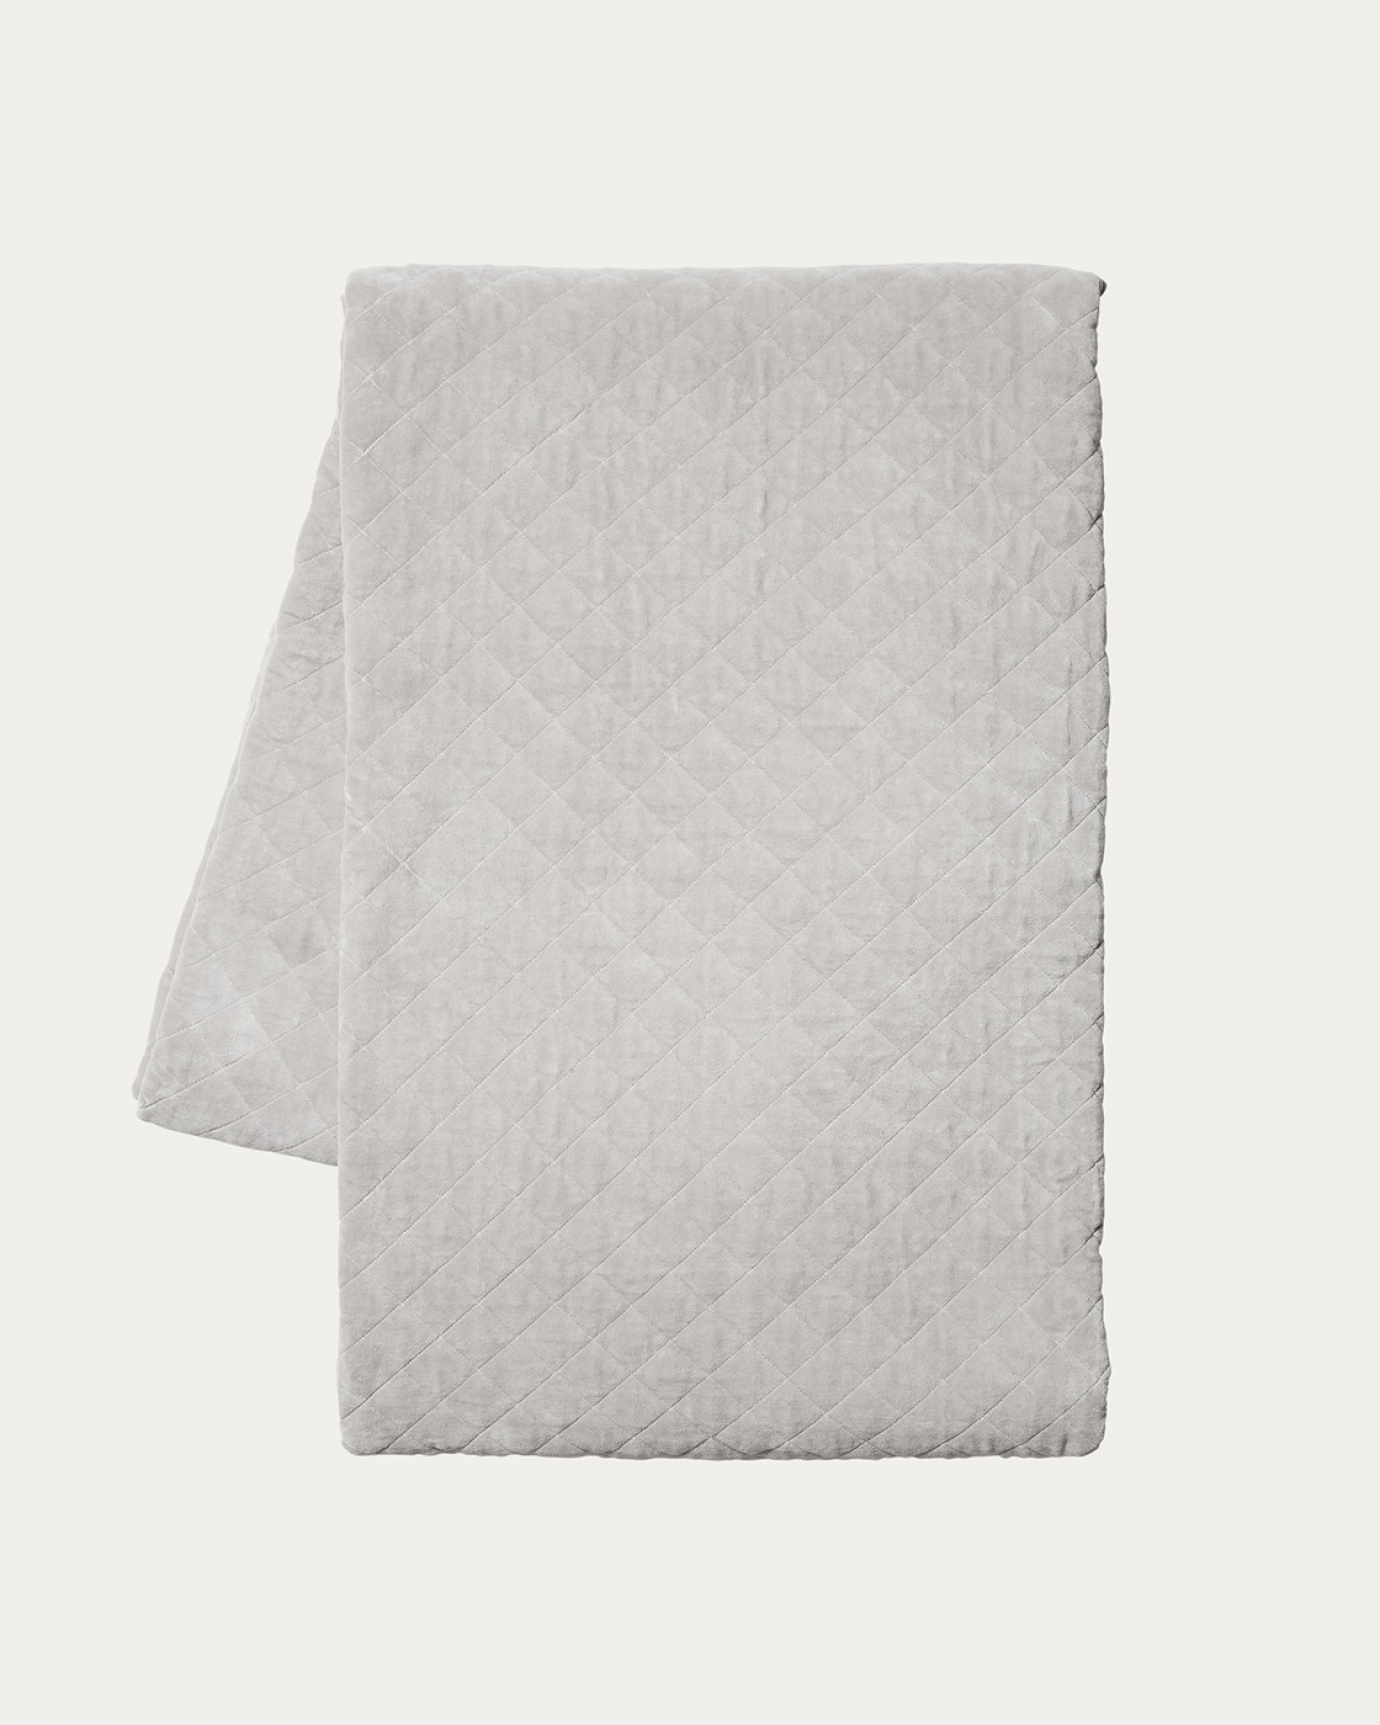 Immagine prodotto grigio argento PICCOLO copriletto in morbido velluto di cotone biologico per letto singolo di LINUM DESIGN. Dimensioni 170x260 cm.